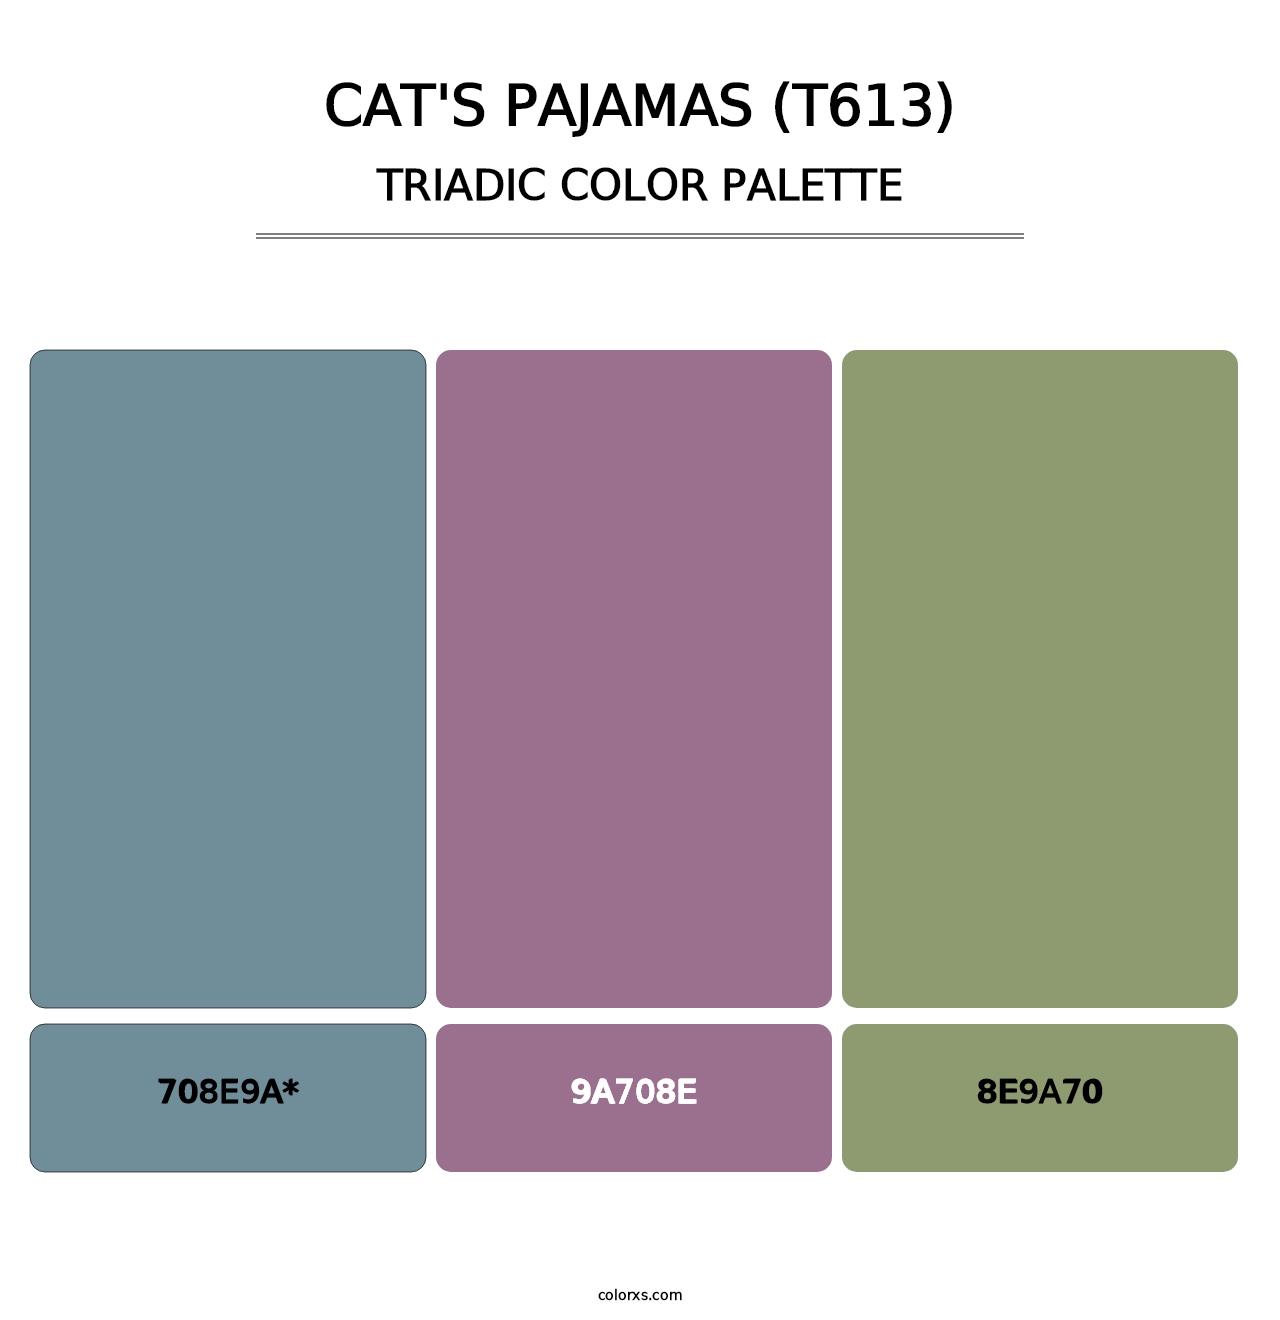 Cat's Pajamas (T613) - Triadic Color Palette